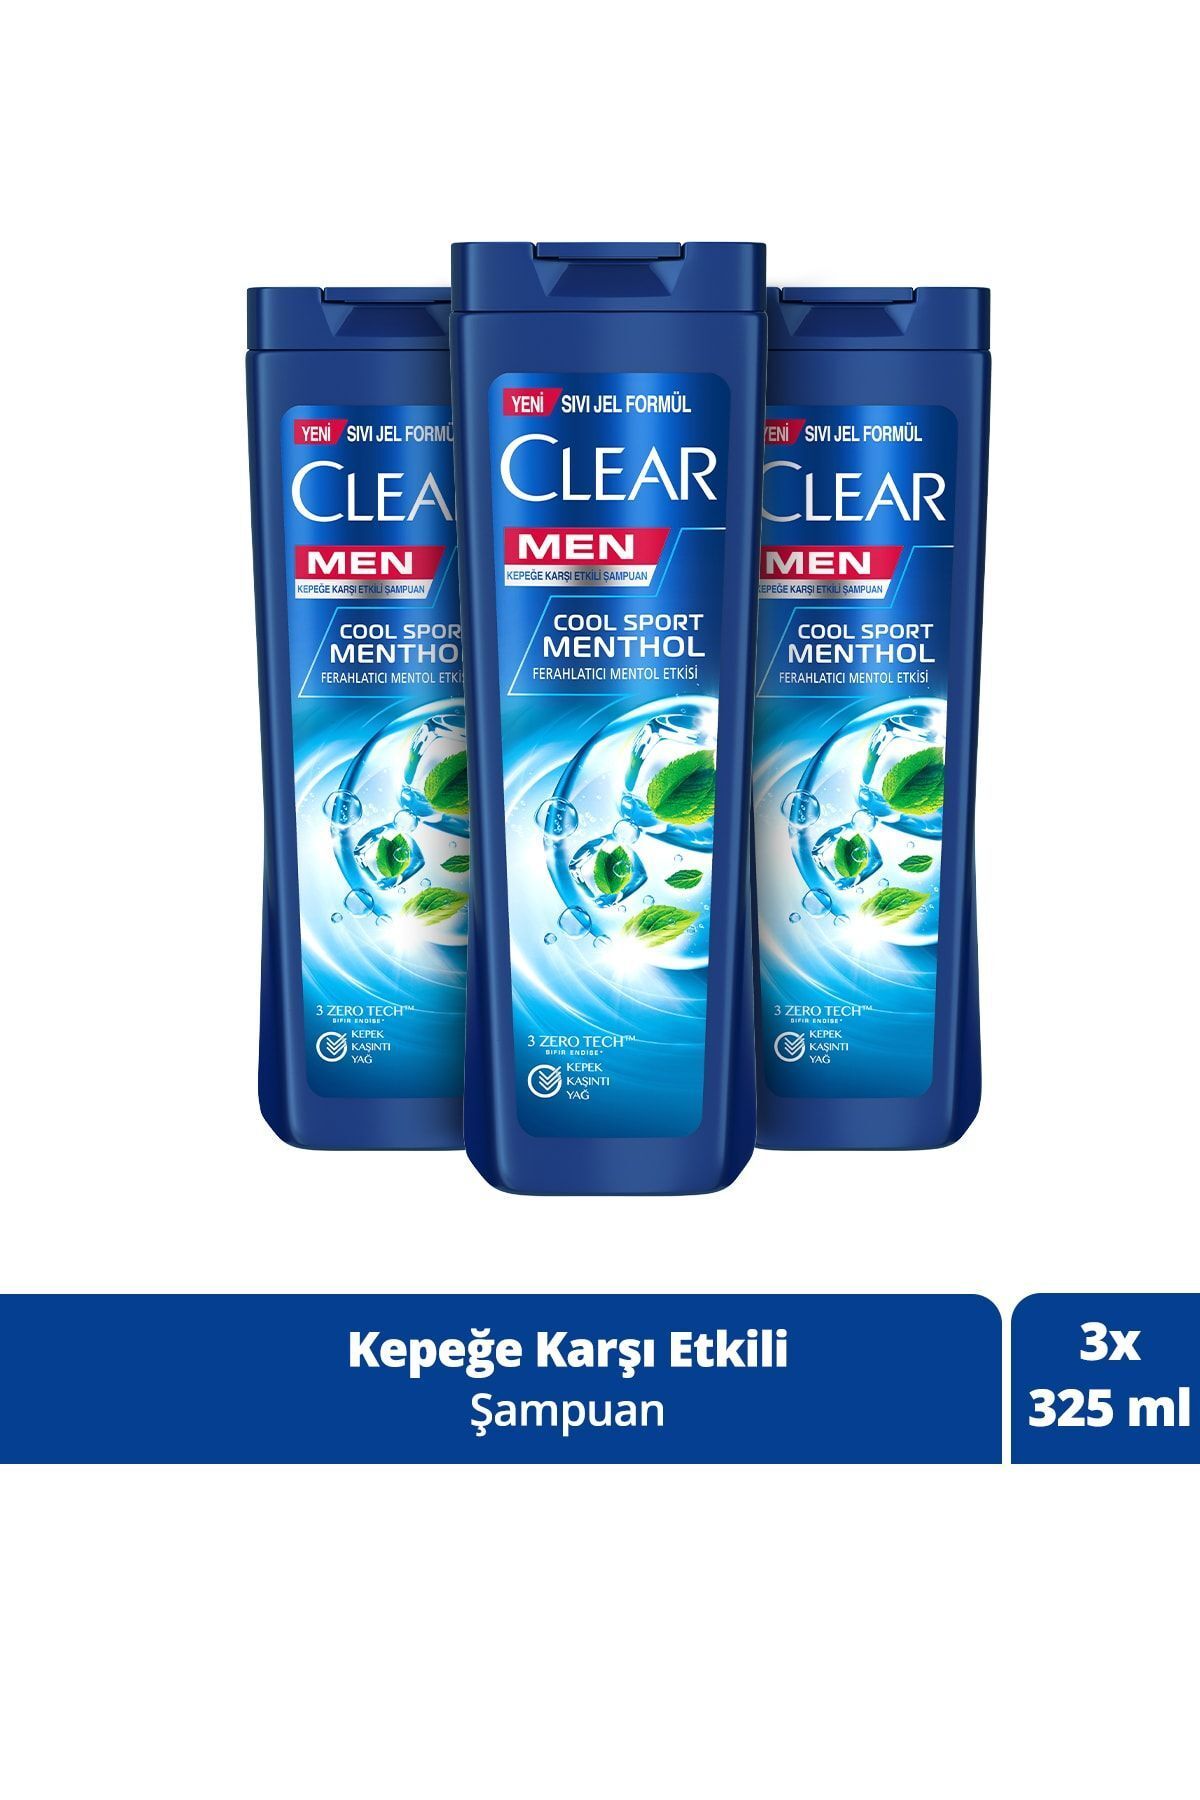 Clear Men Kepeğe Karşı Etkili Şampuan Cool Sport Menthol Ferahlatıcı Mentol Etkisi 325 Ml X3